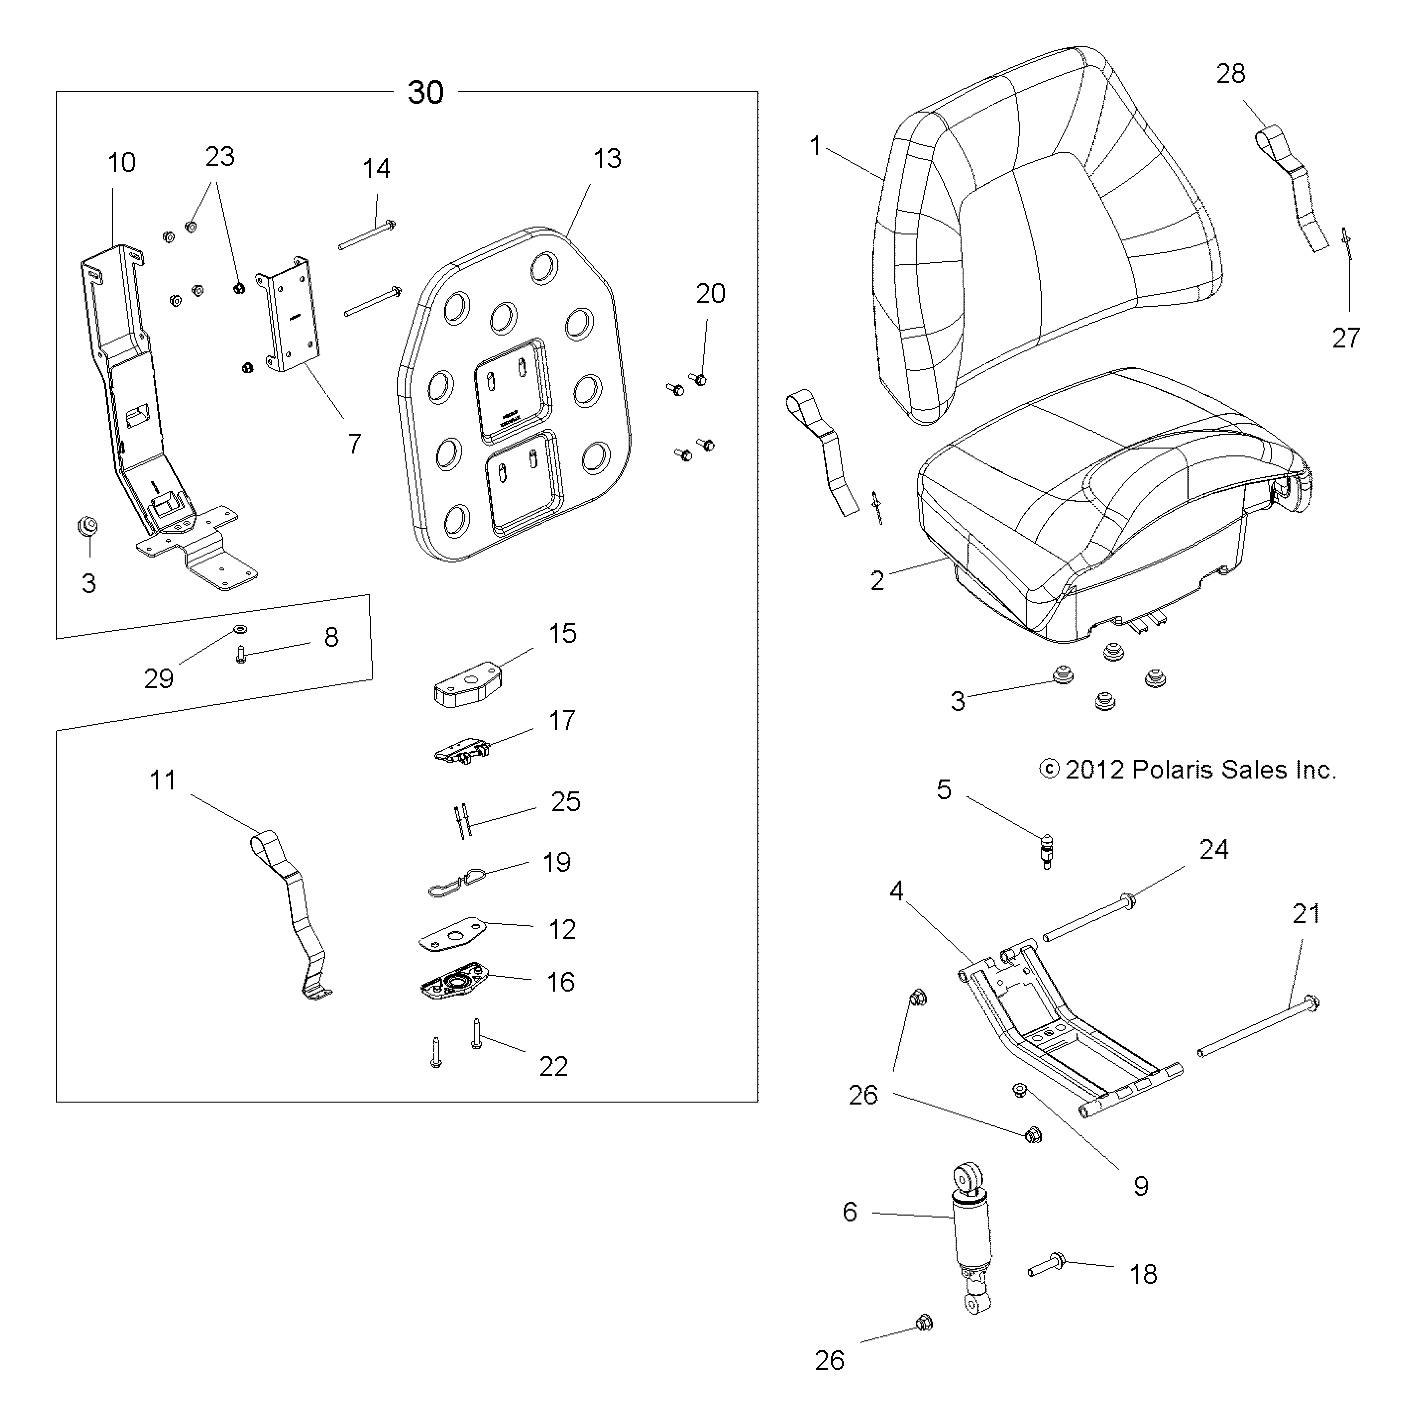 Foto diagrama Polaris que contem a peça 7621479